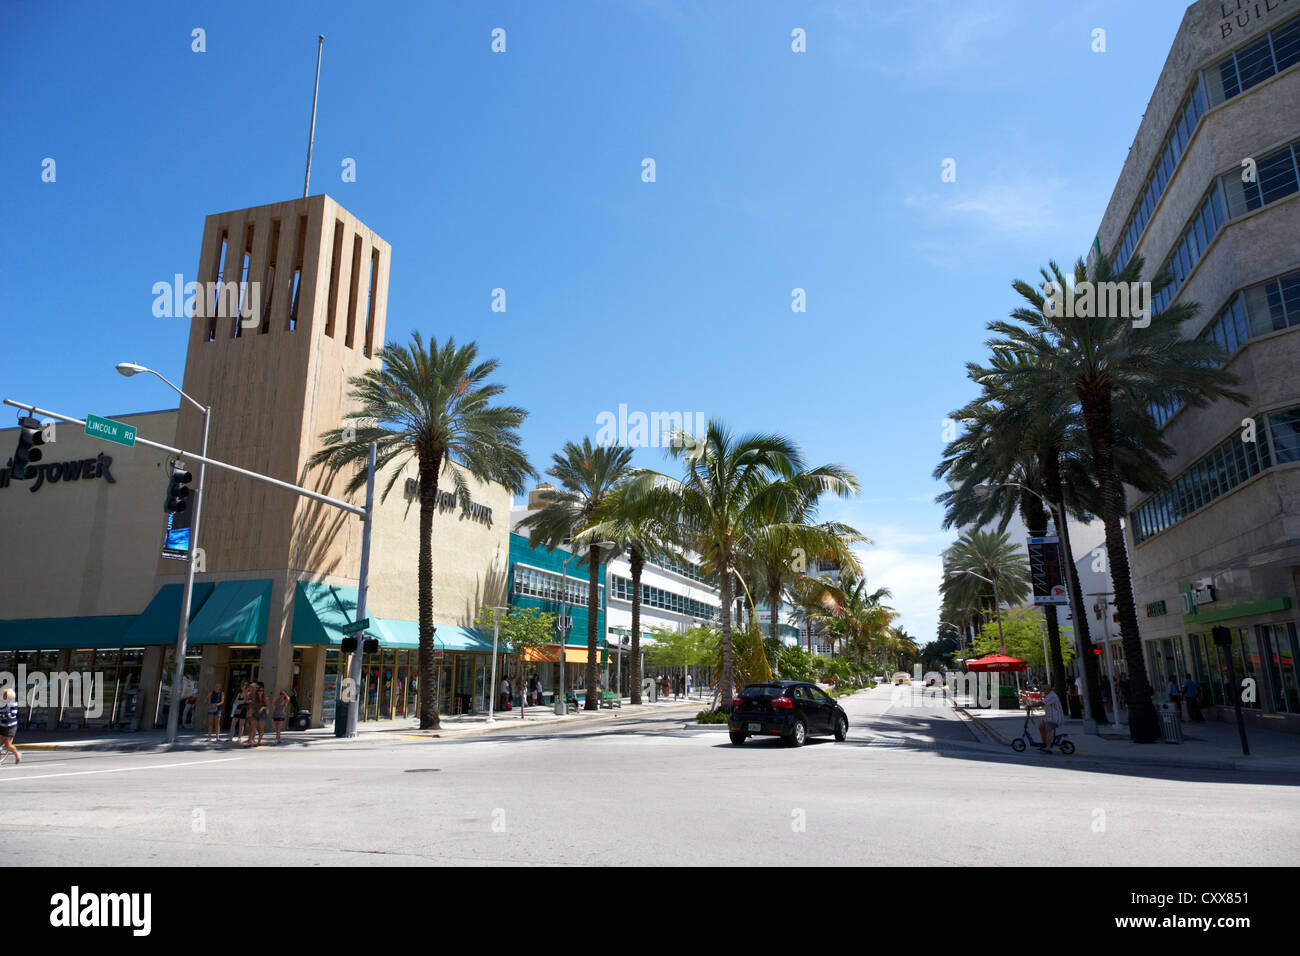 Jonction de Lincoln Road et Washington avenue zones de shopping Miami South beach floride usa Banque D'Images